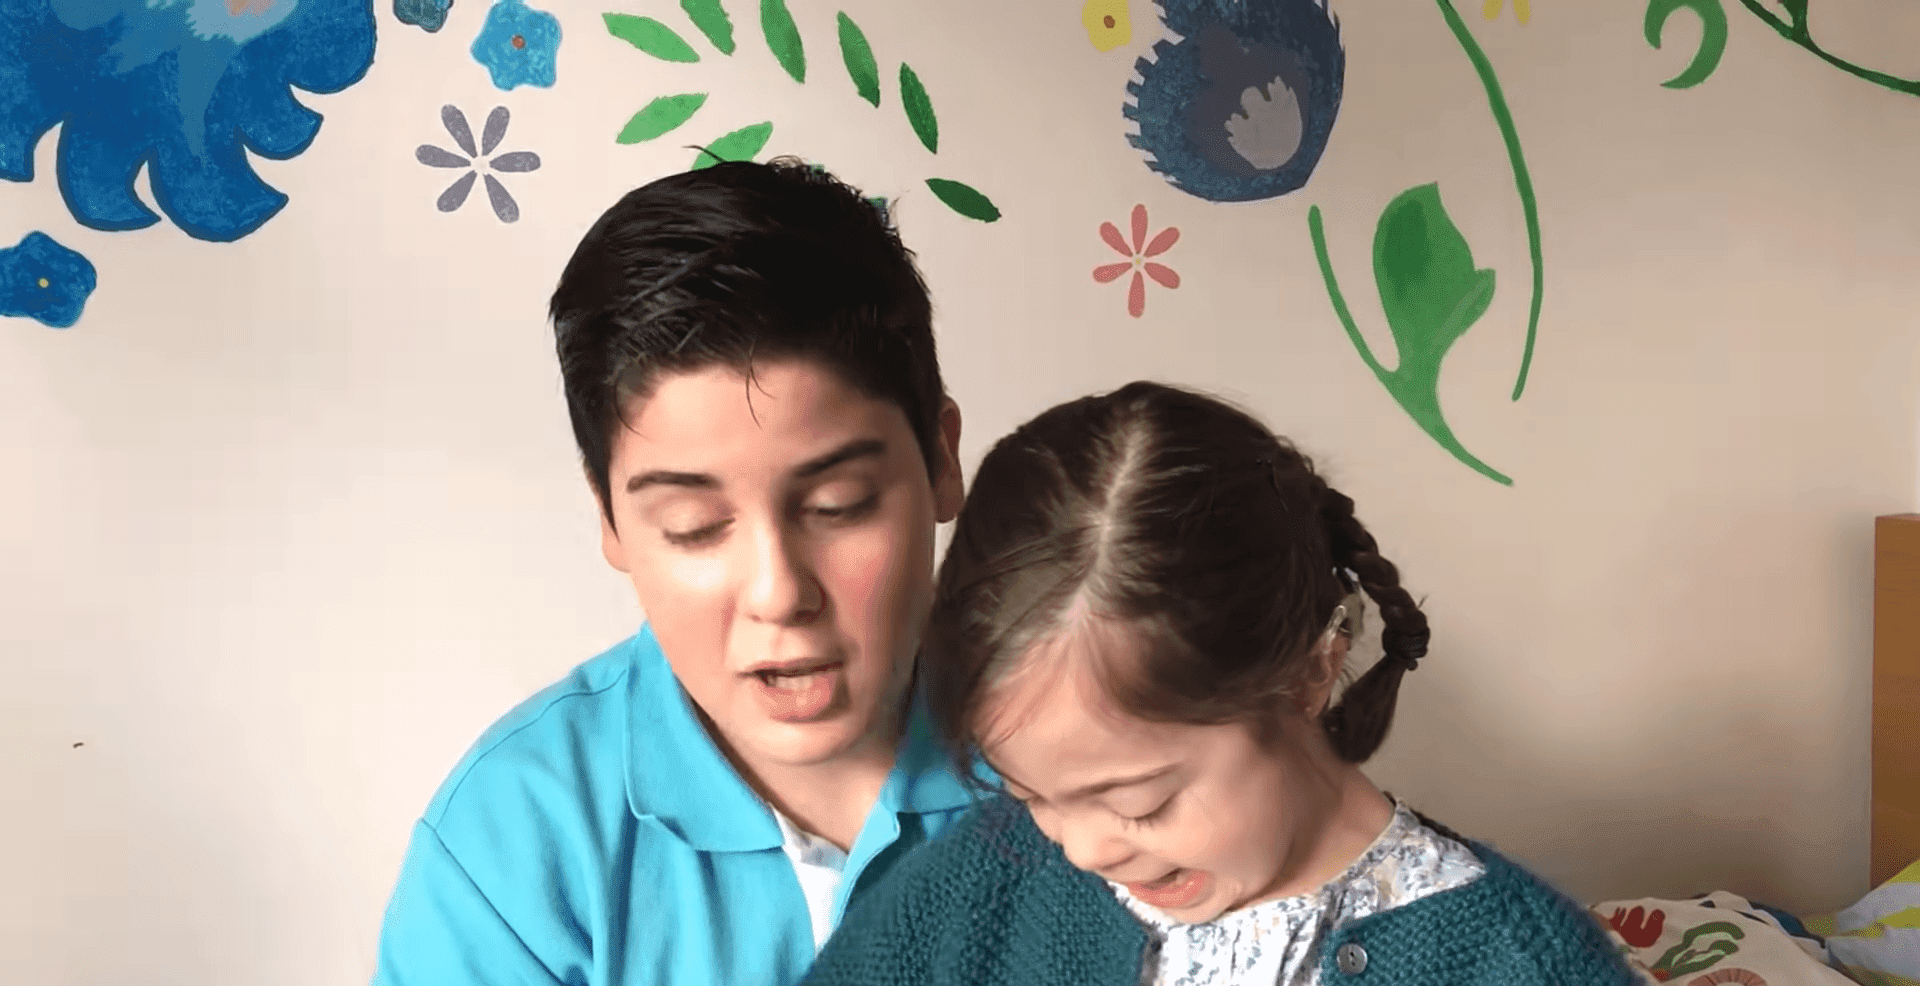 La pequeña Ana Pereda y su hermano Nacho. Fuente: YouTube/Familia Pereda Rodriguez